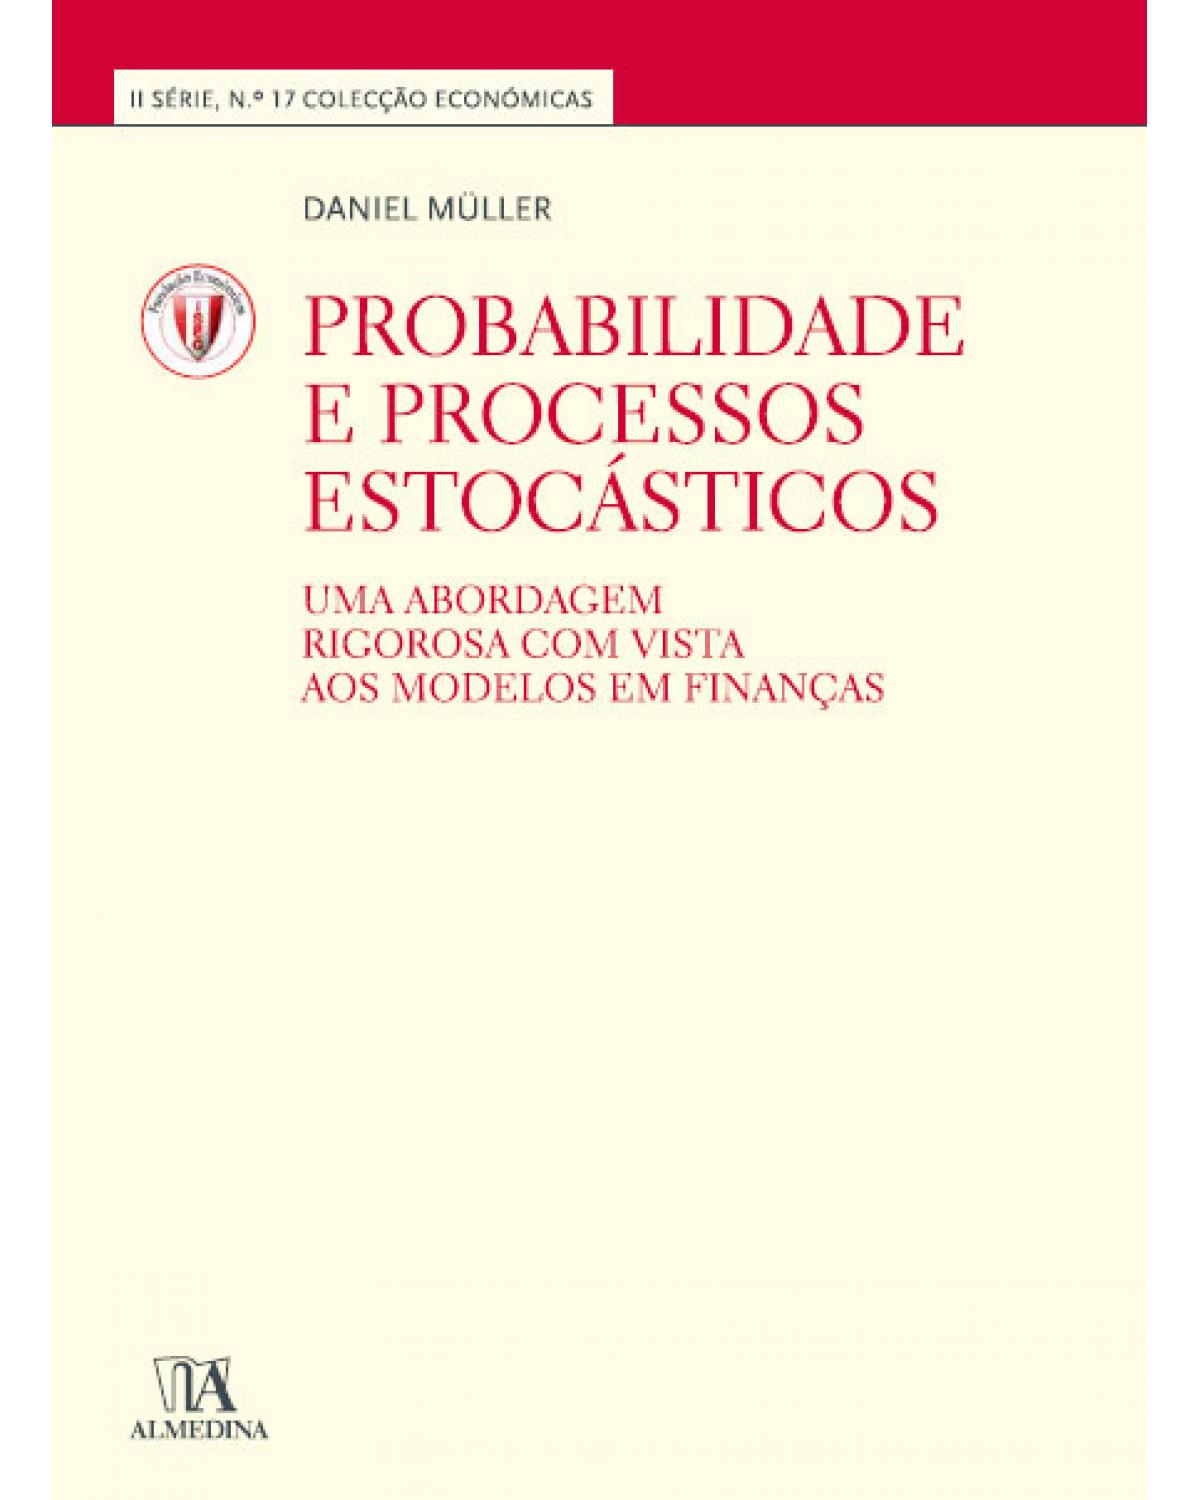 Probabilidade e processos estocásticos - Volume 17: uma abordagem rigorosa com vista aos modelos em finanças - 1ª Edição | 2011